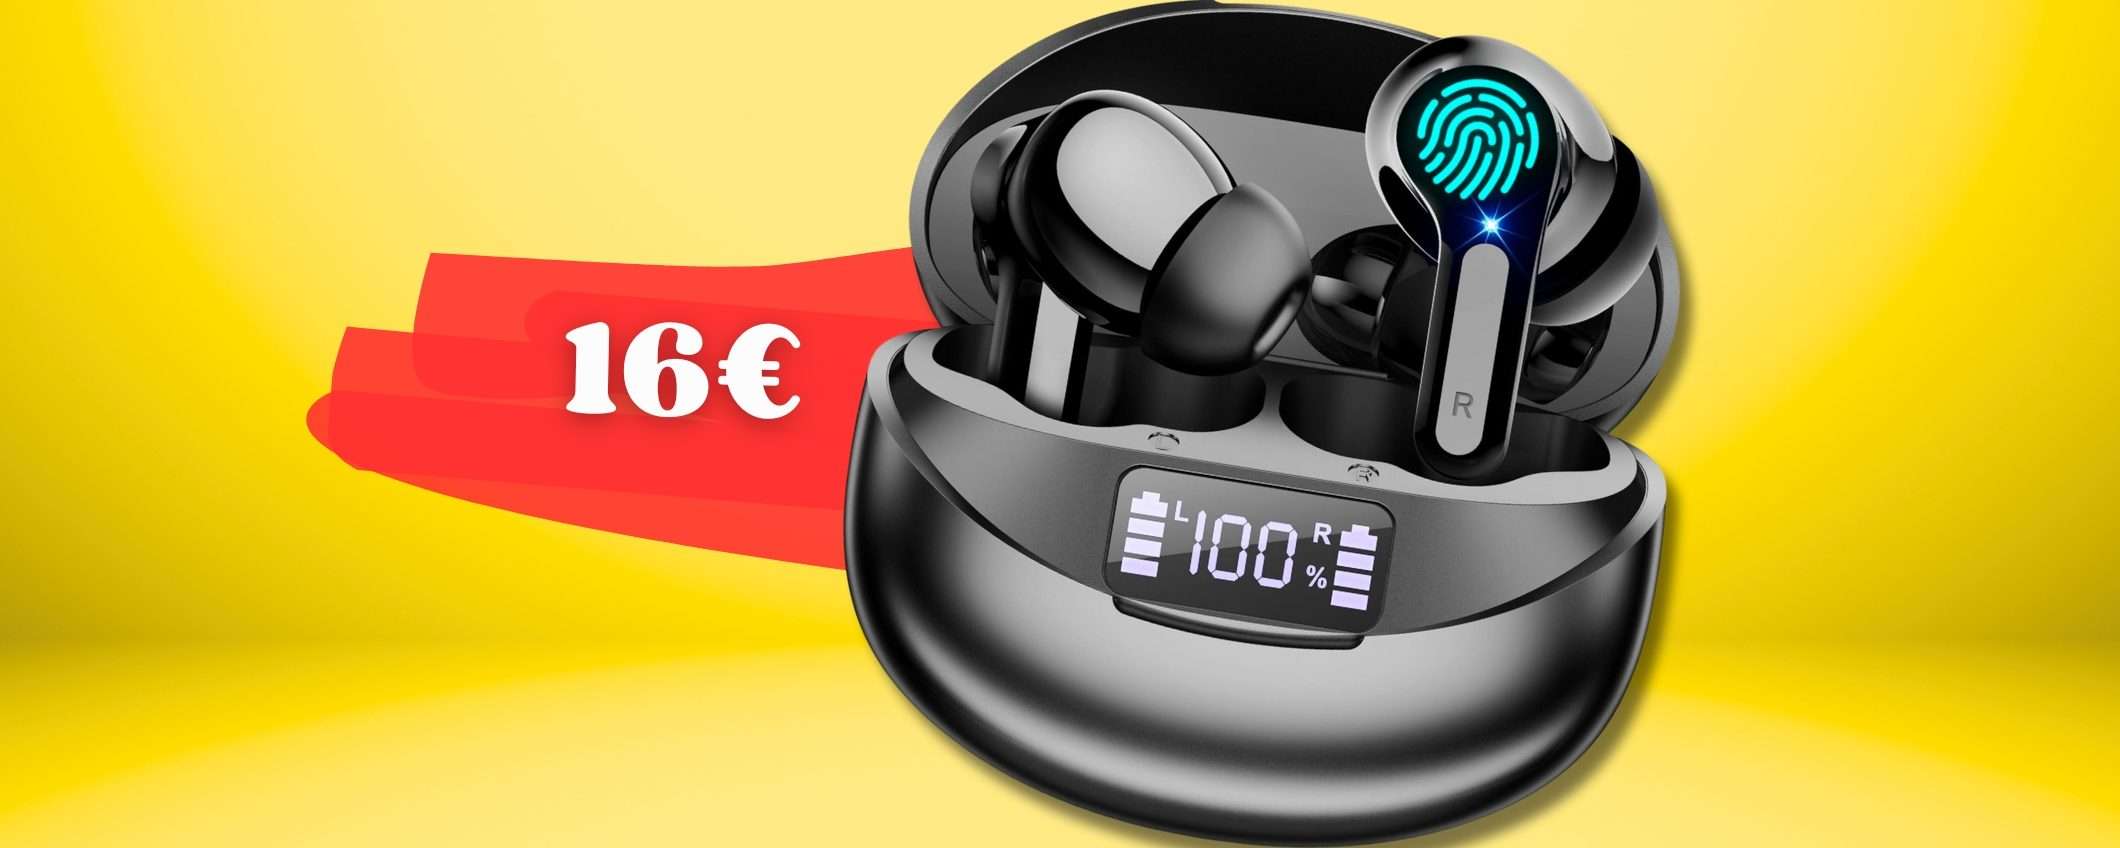 Auricolari Bluetooth 5.3 ESAGERATI, con 16€ hai cancellazione del rumore